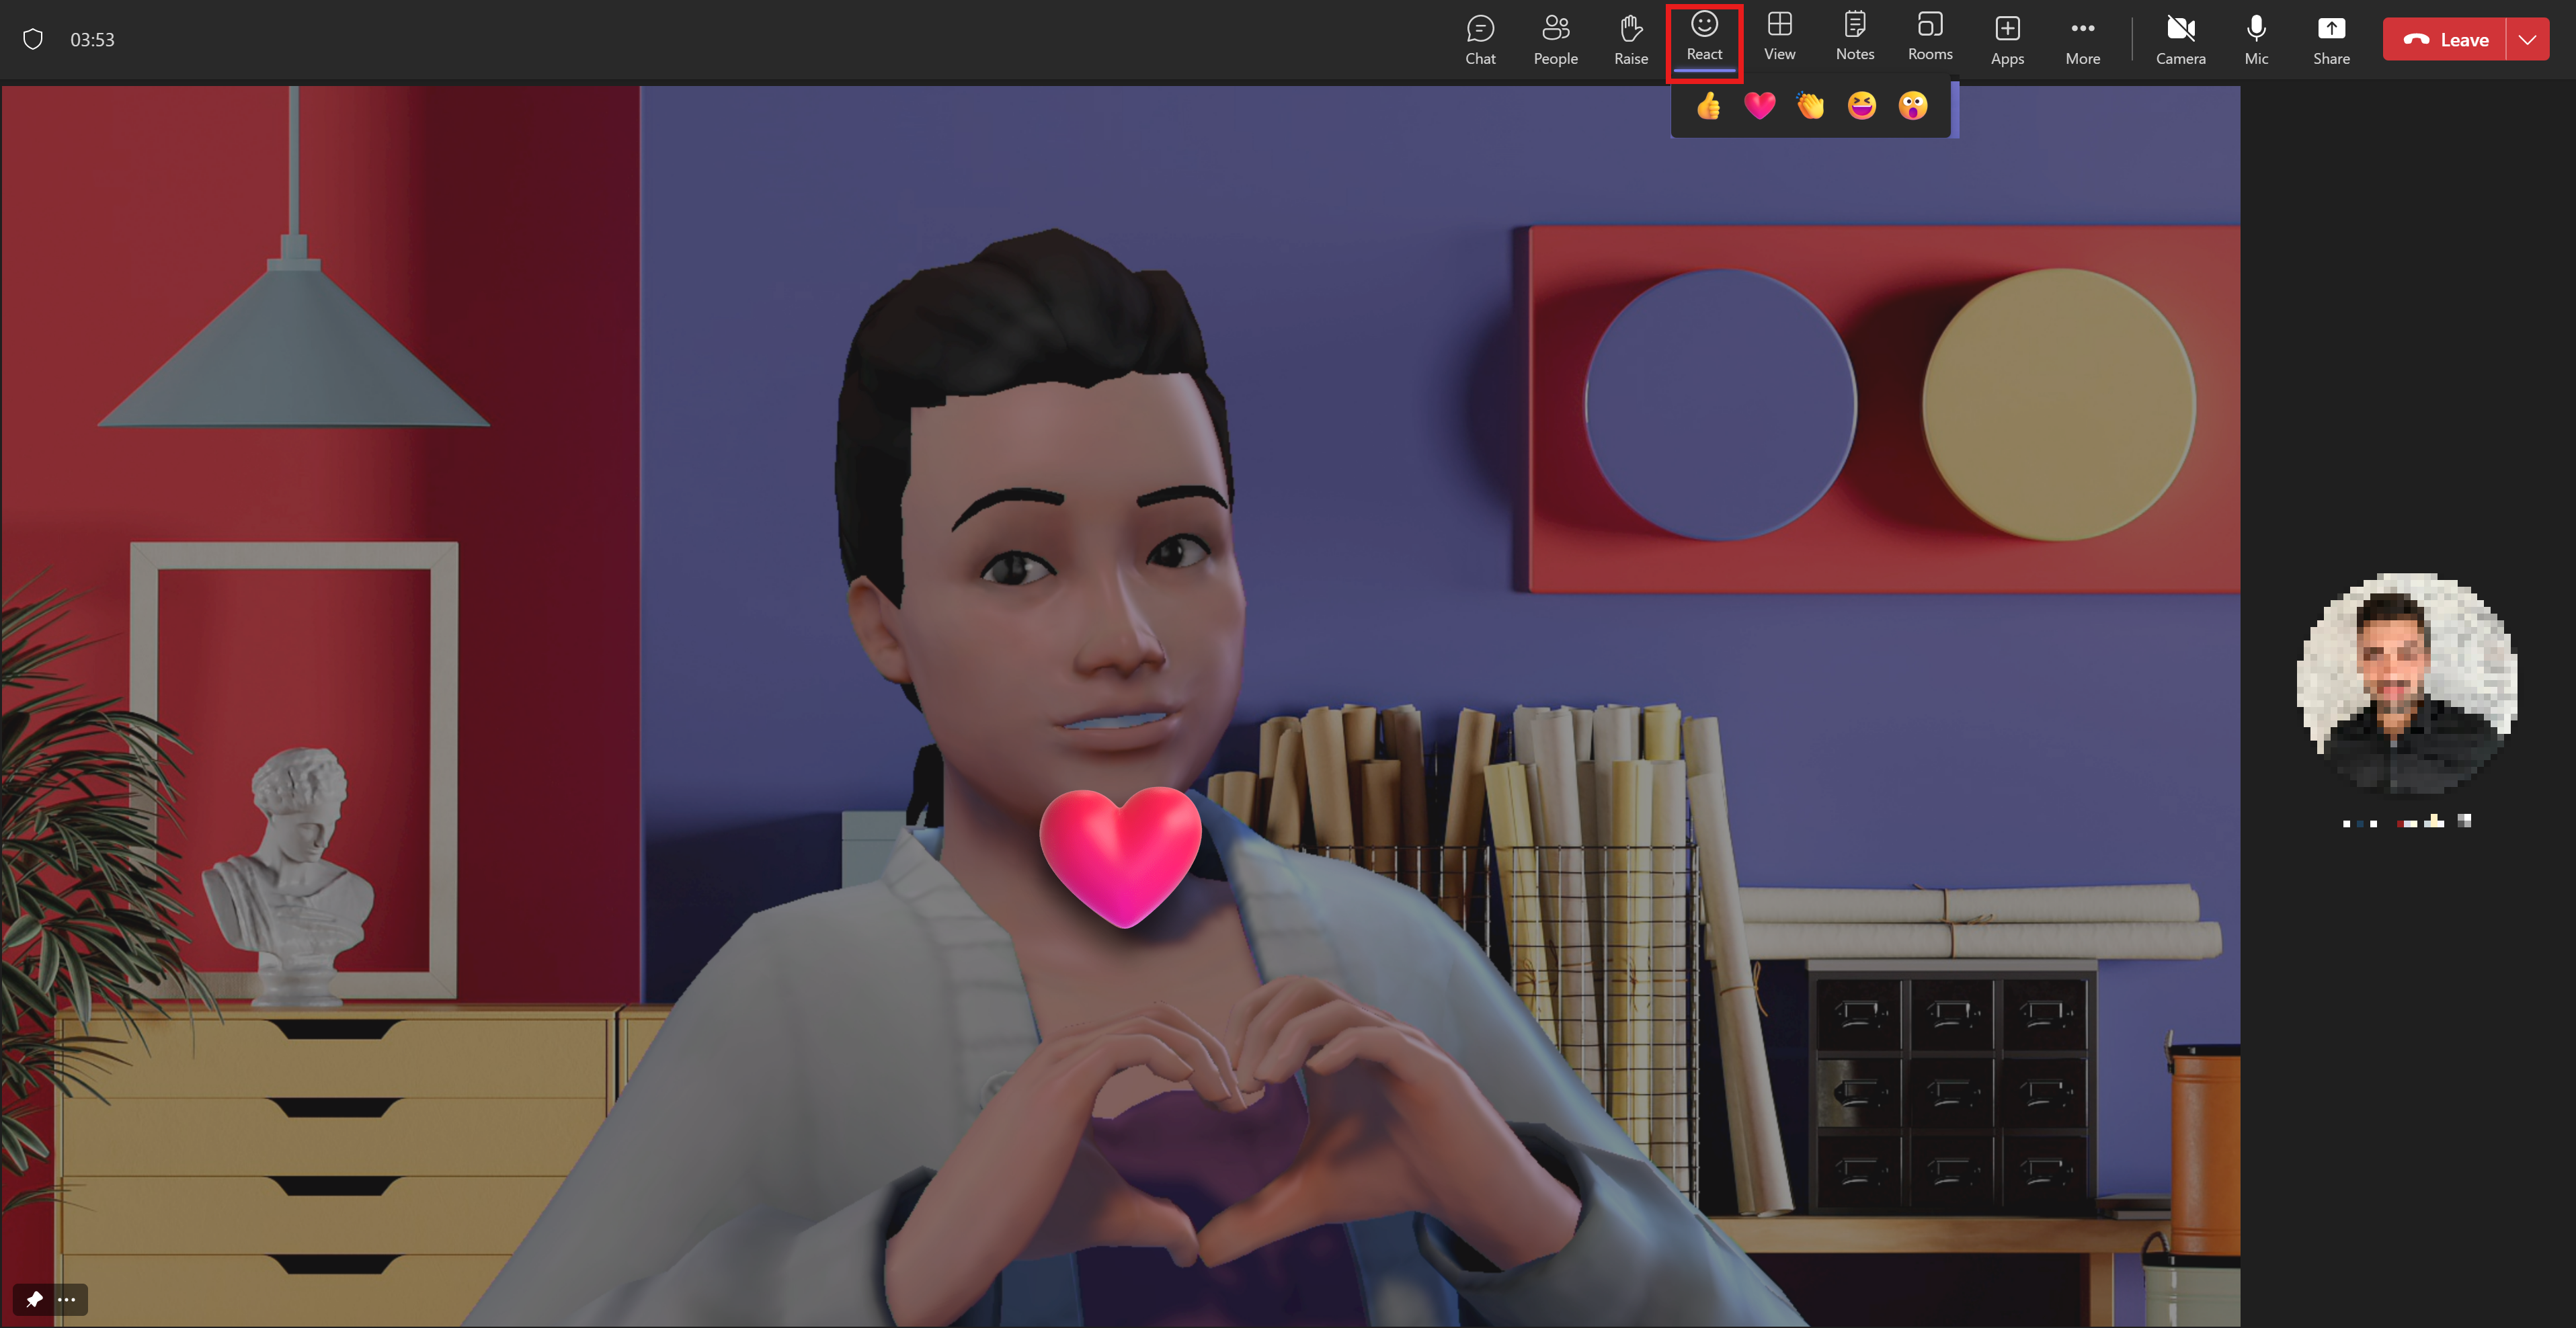 Een avatar toont haar liefde door een hart te maken met haar handen